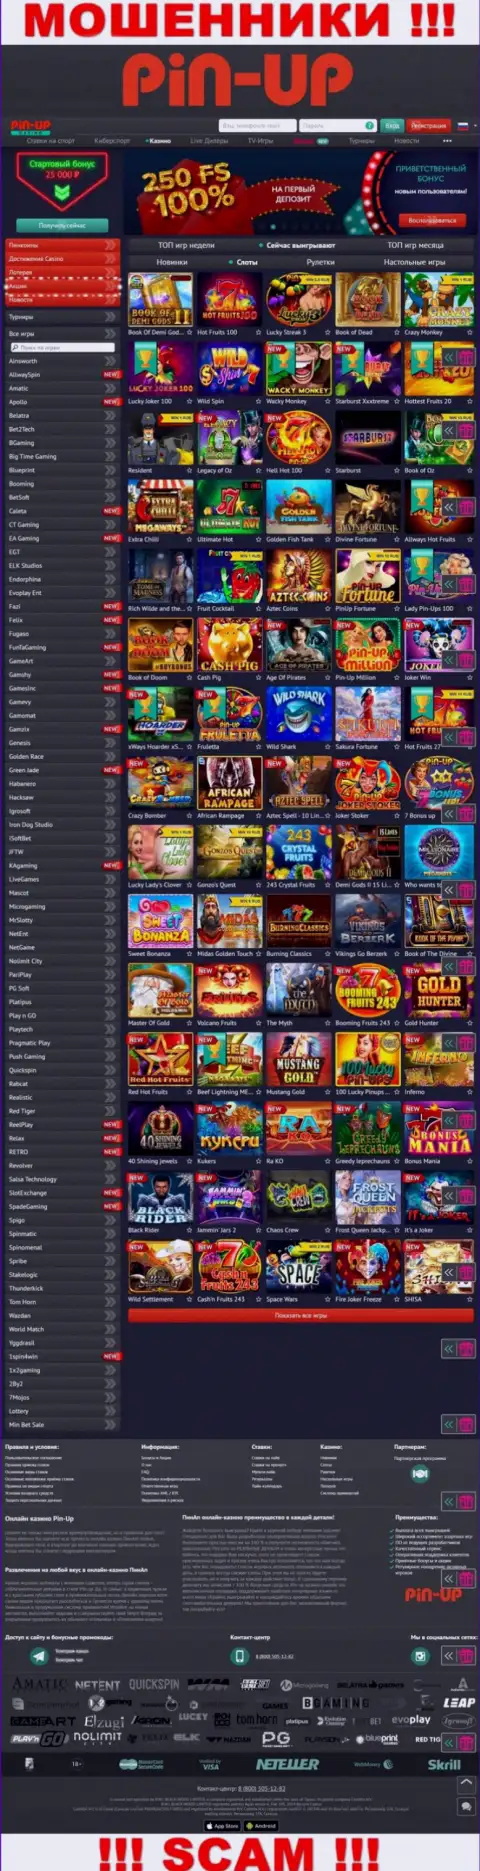 Pin-Up Casino - это официальный сайт интернет мошенников Пин-Ап Казино